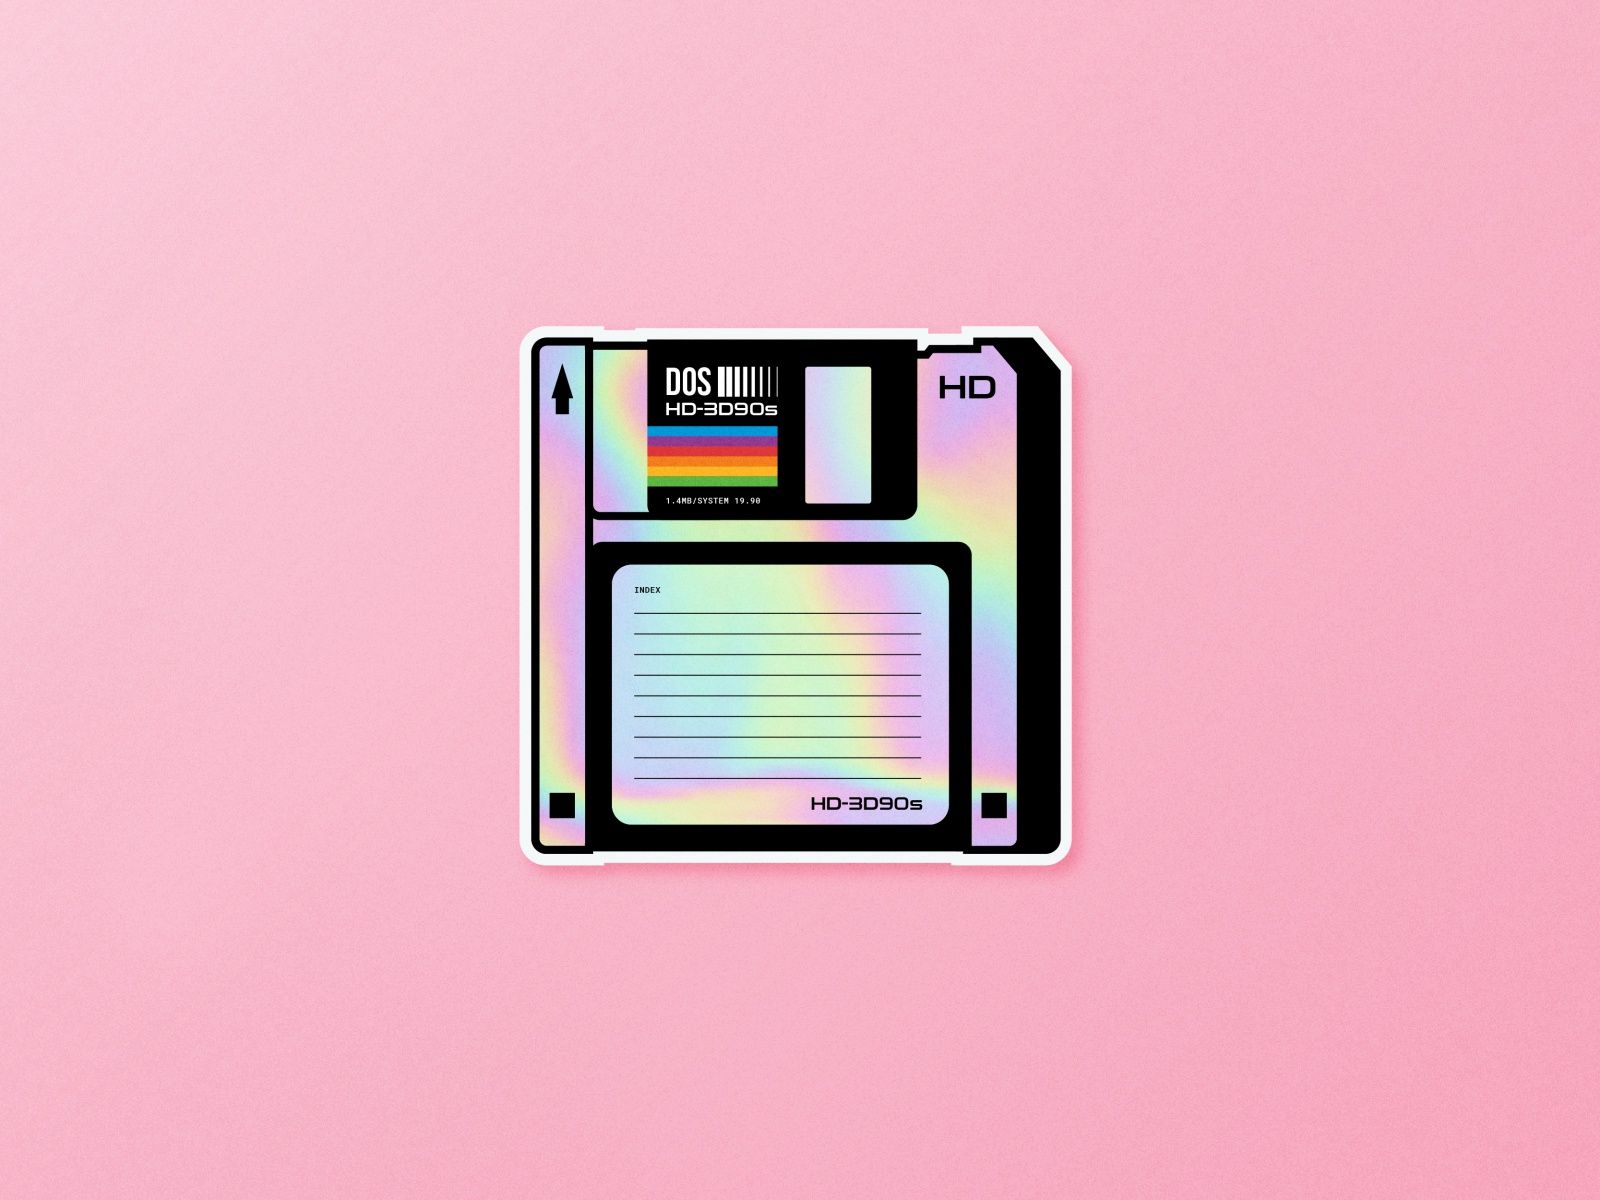 Stickermule HD 3D90s Floppy Disk. Floppy Disk, 90's Sticker, Floppy